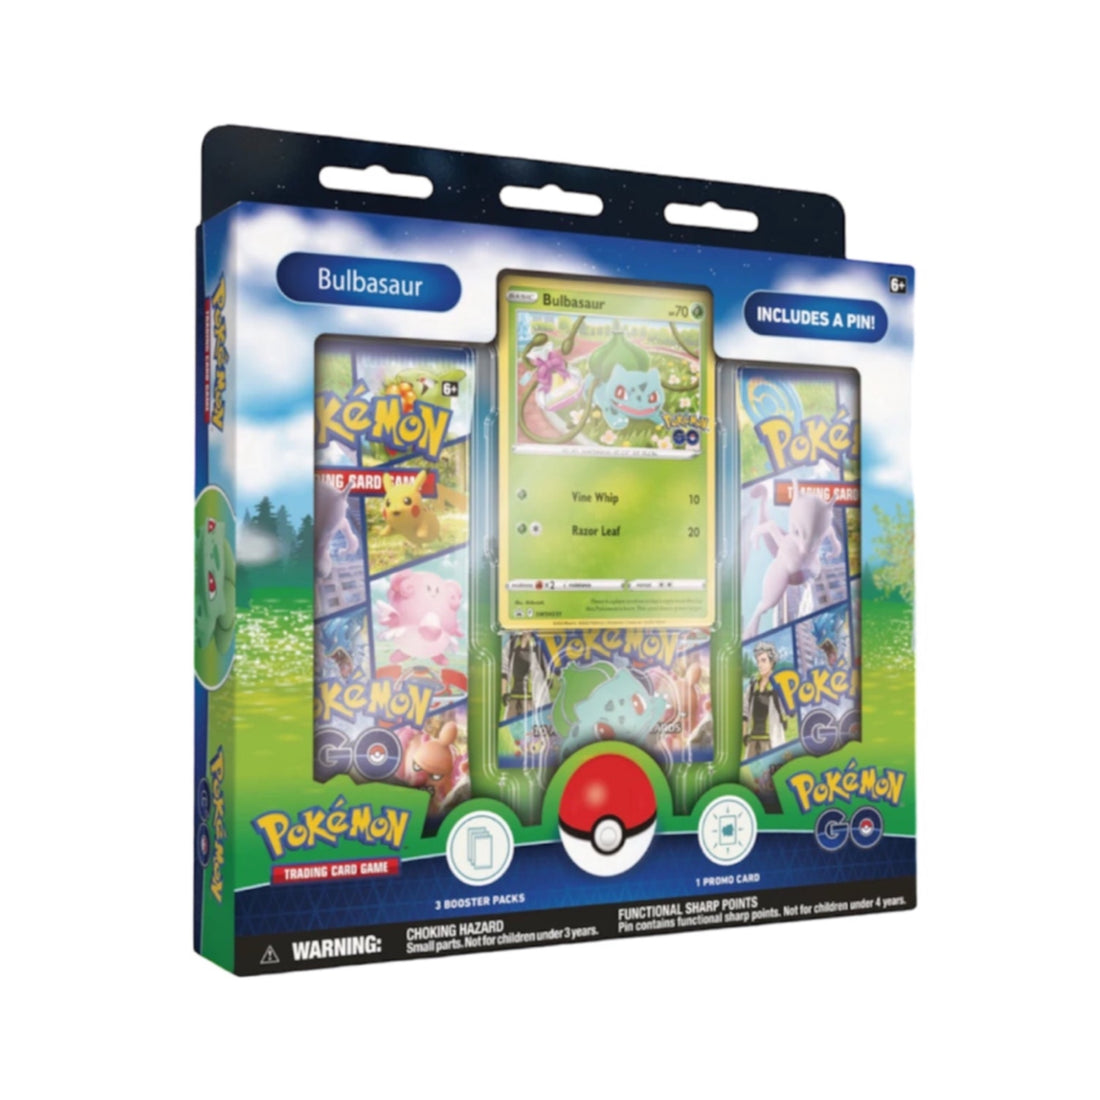 Pokémon Go Pin Collection Box